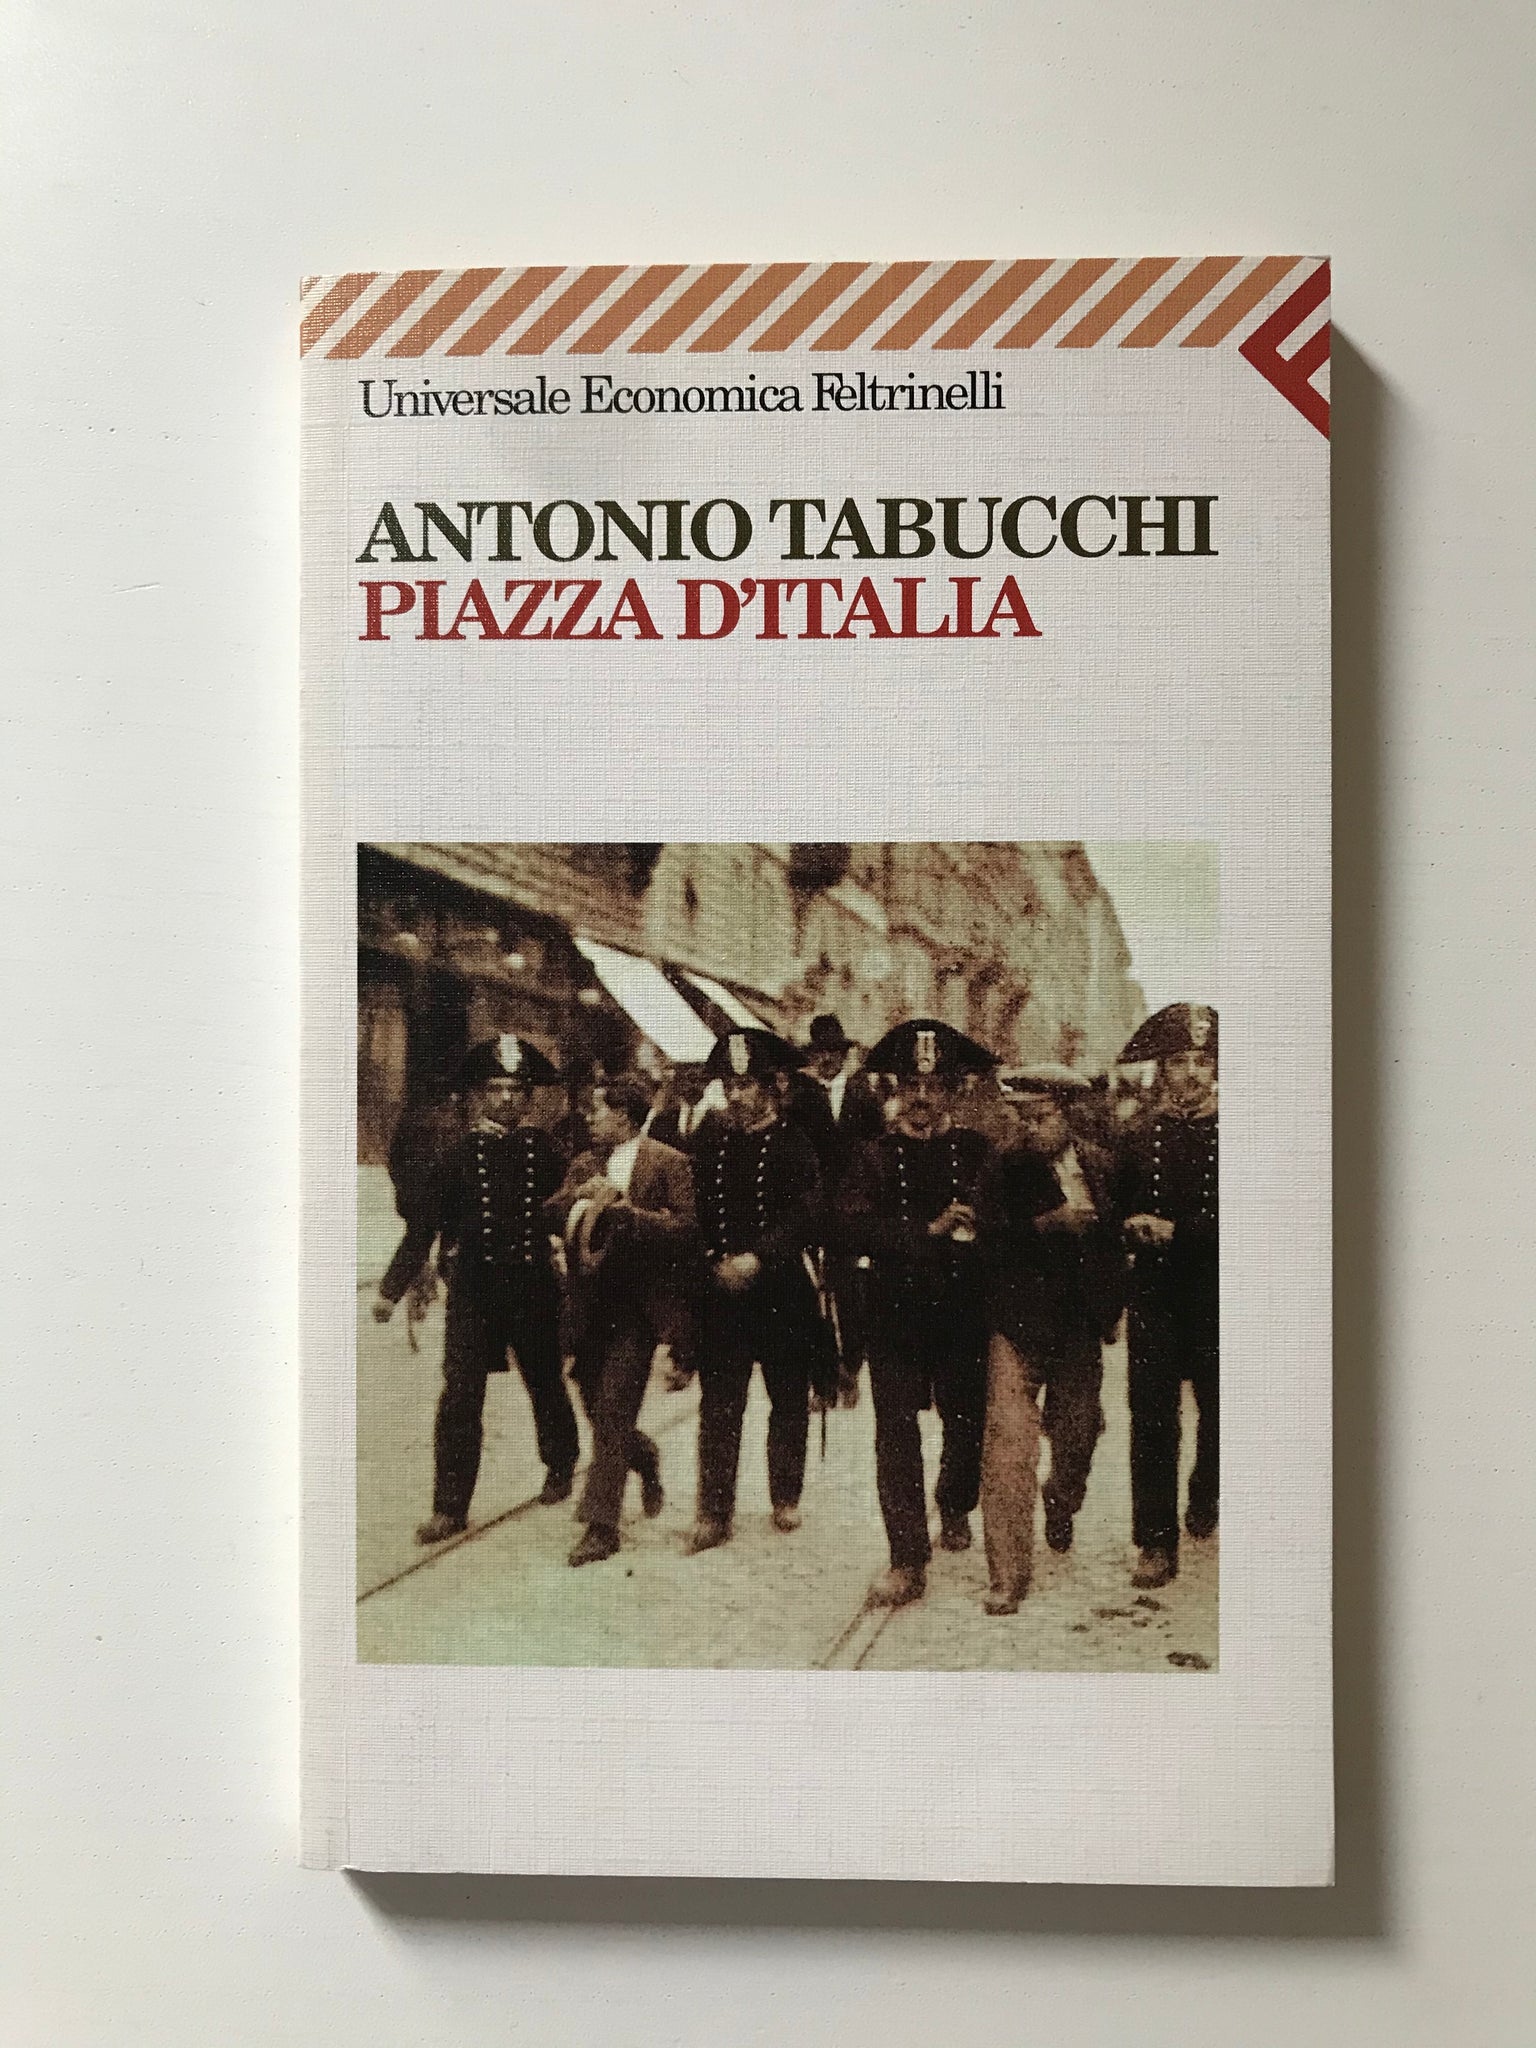 Antonio Tabucchi - Piazza d'Italia